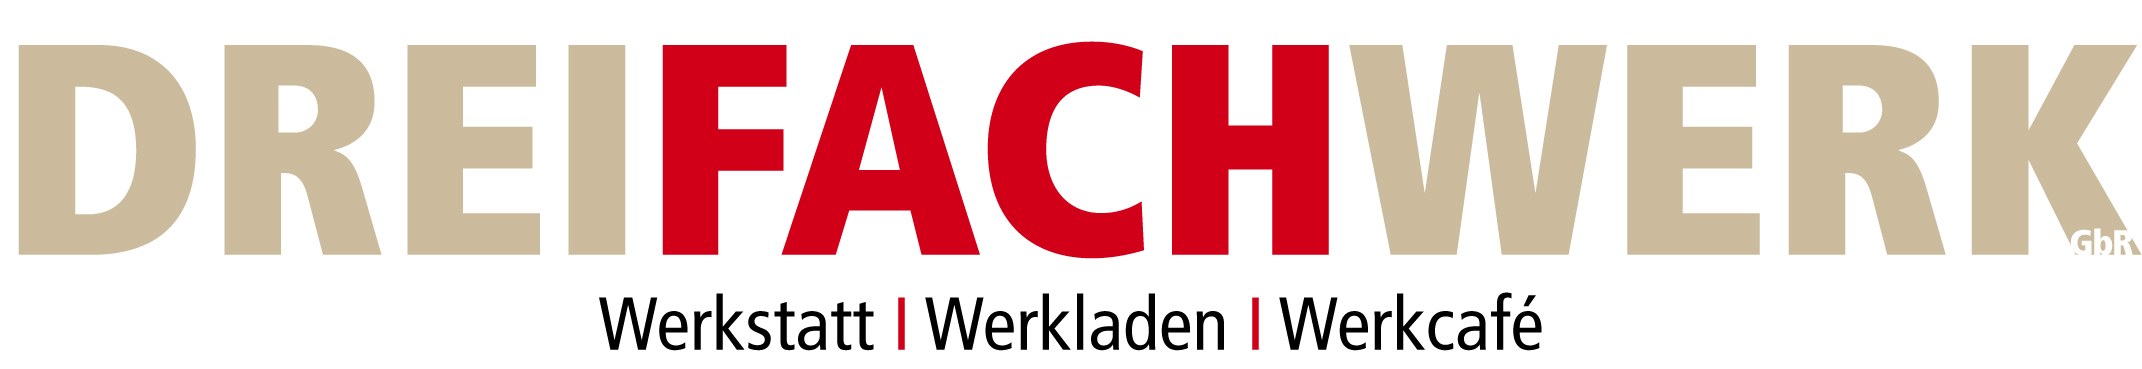 Logo Dreifachwerk